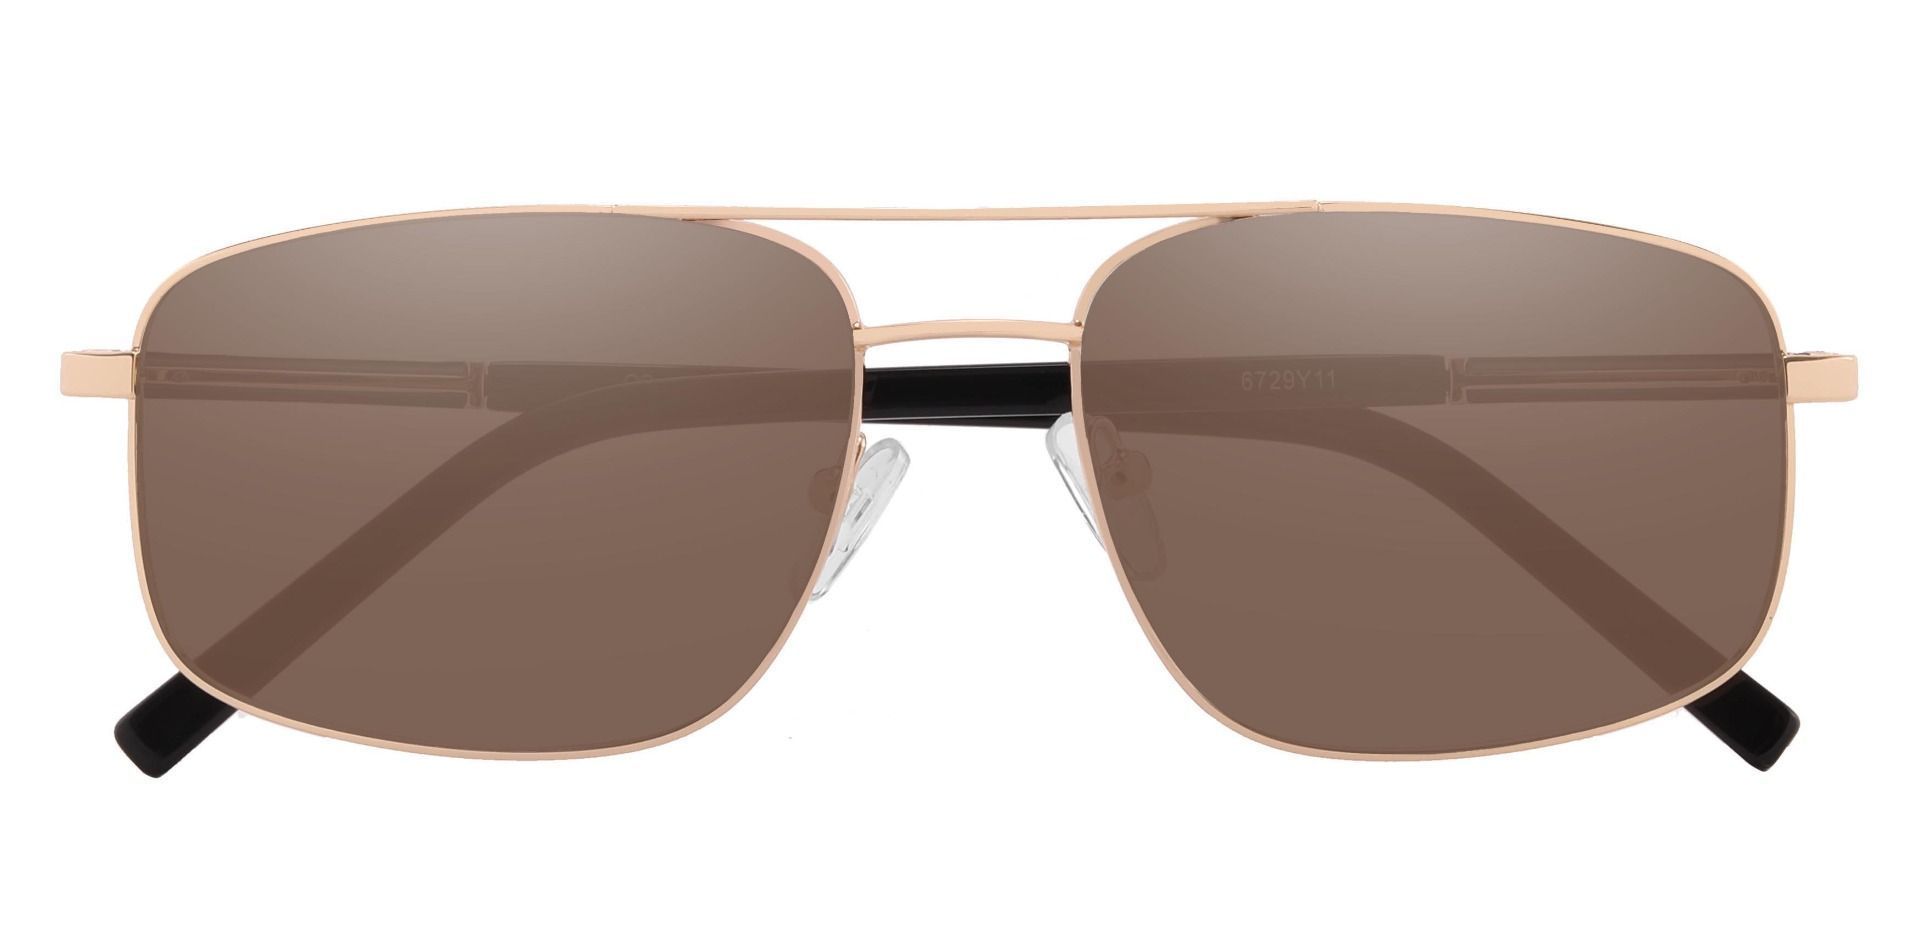 Davenport Aviator Progressive Sunglasses - Gold Frame With Brown Lenses